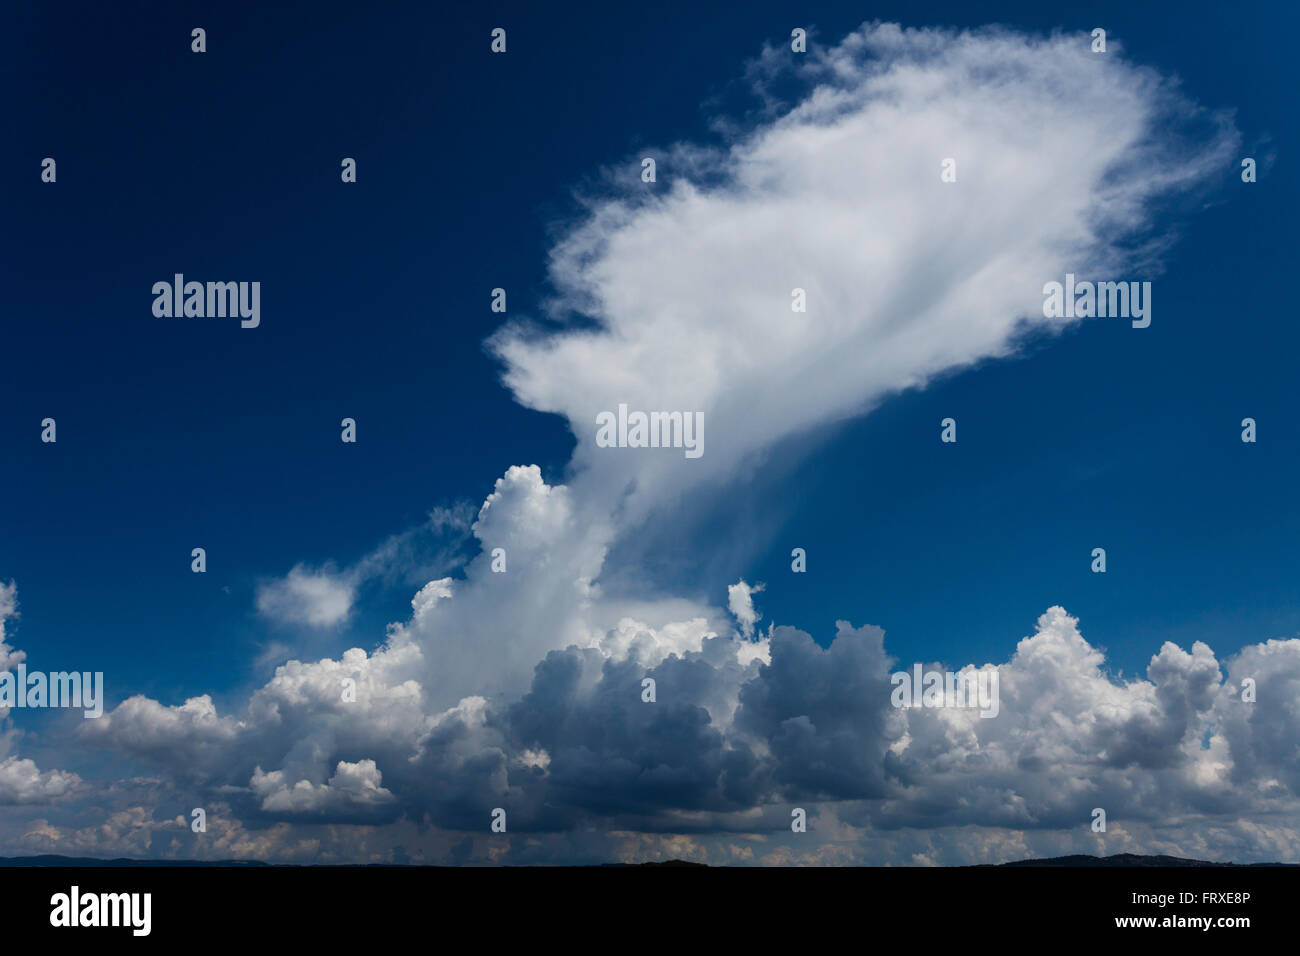 Cumulus-Wolken über dem See Lago di Bolsena, Isola Martana Im Hintergrund, Kratersee vulkanischen Ursprungs, in der Nähe von Montefiascone, Provinz Viterbo, Latium, Italien, Europa Stockfoto